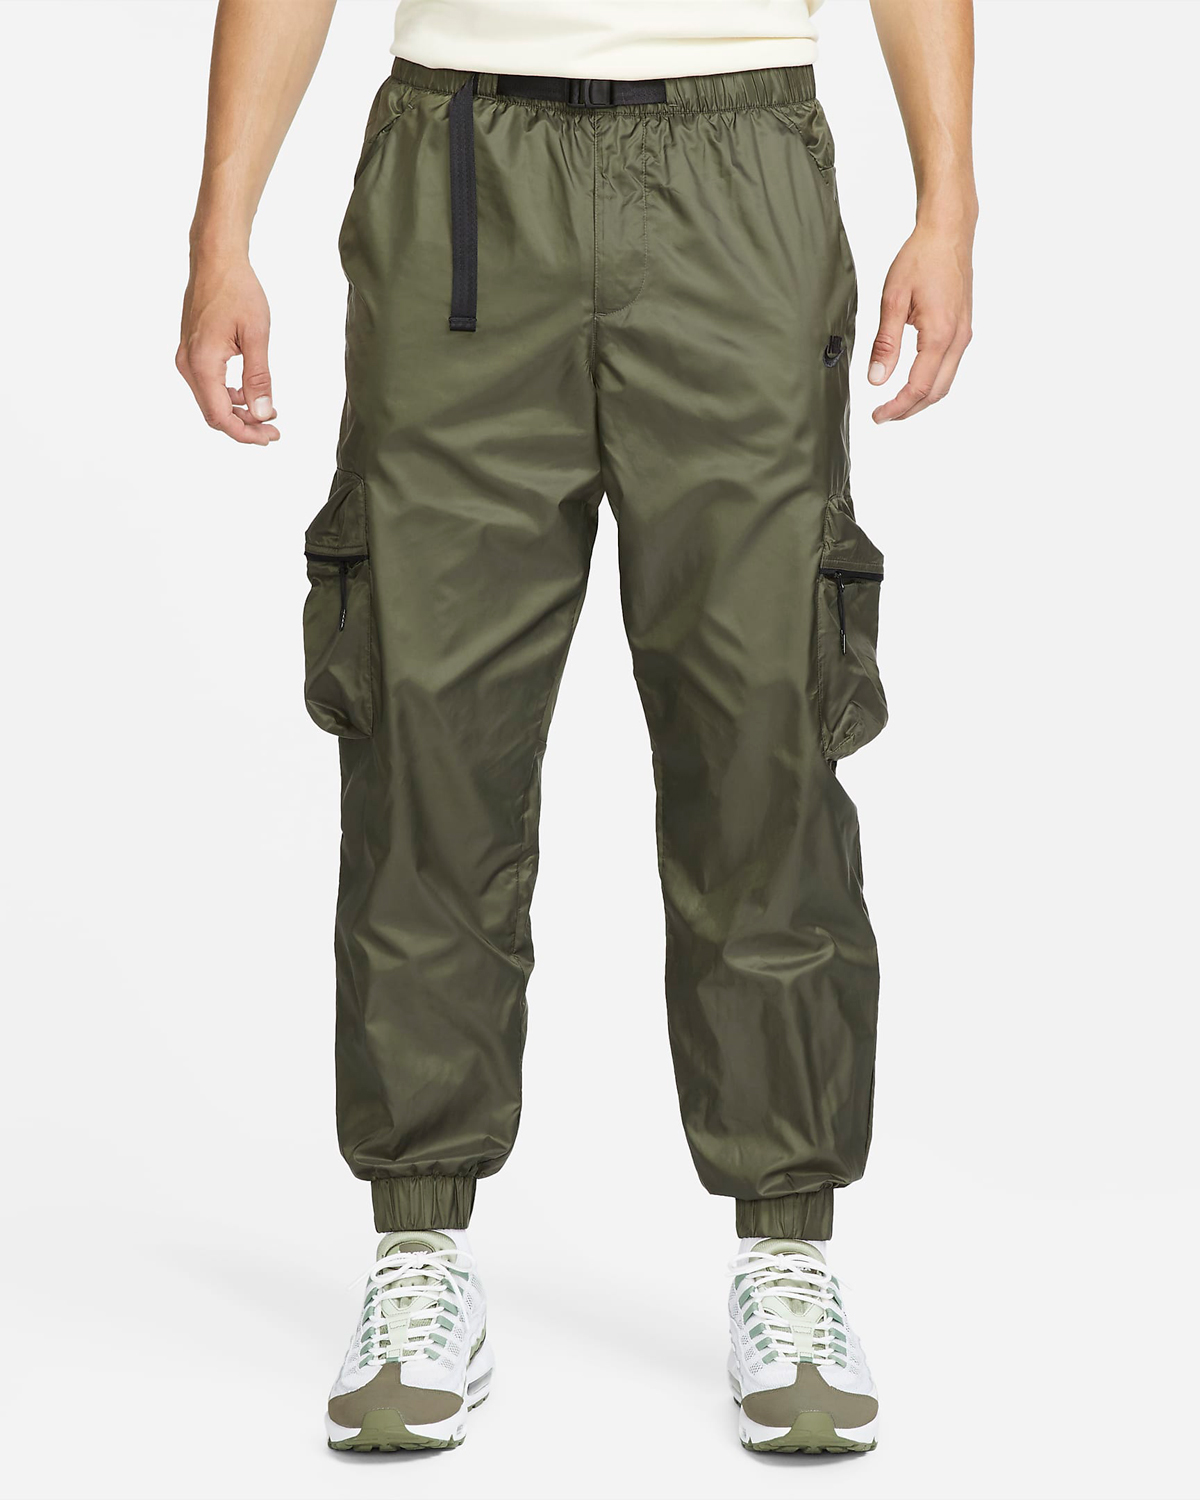 Nike-Tech-Lined-Woven-Pants-Cargo-Khaki